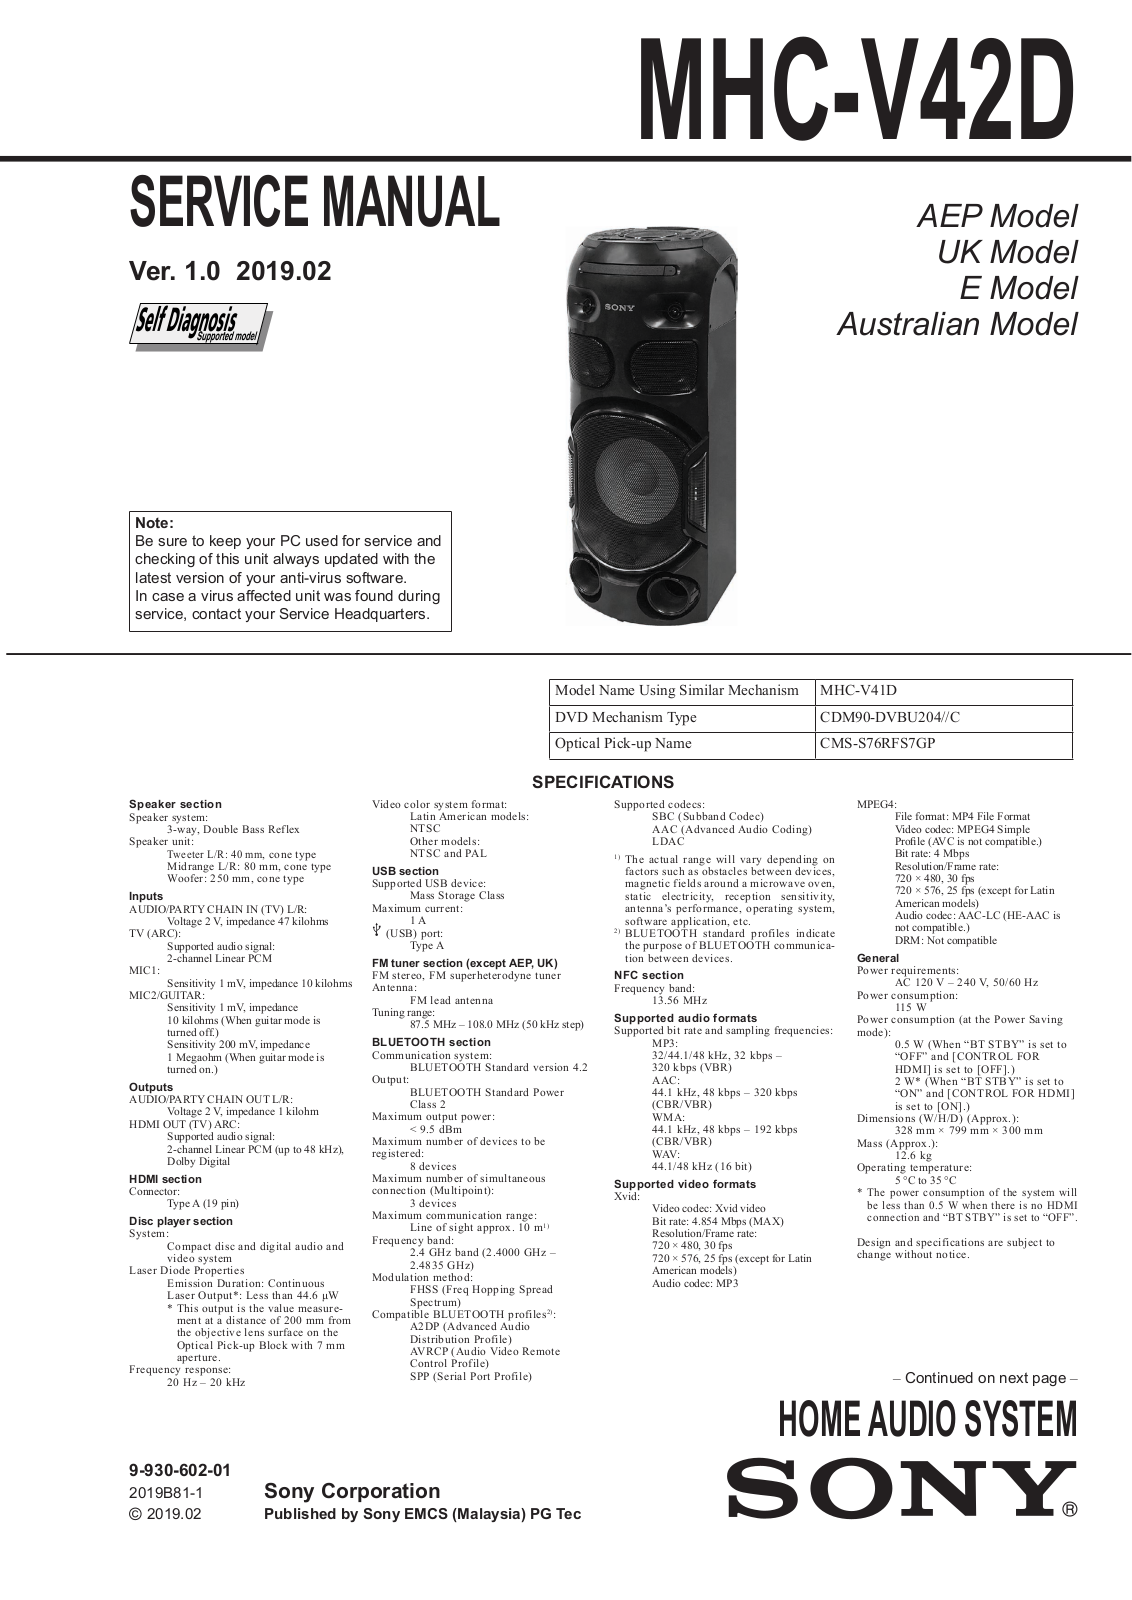 Sony MHC-V42D Service Manual